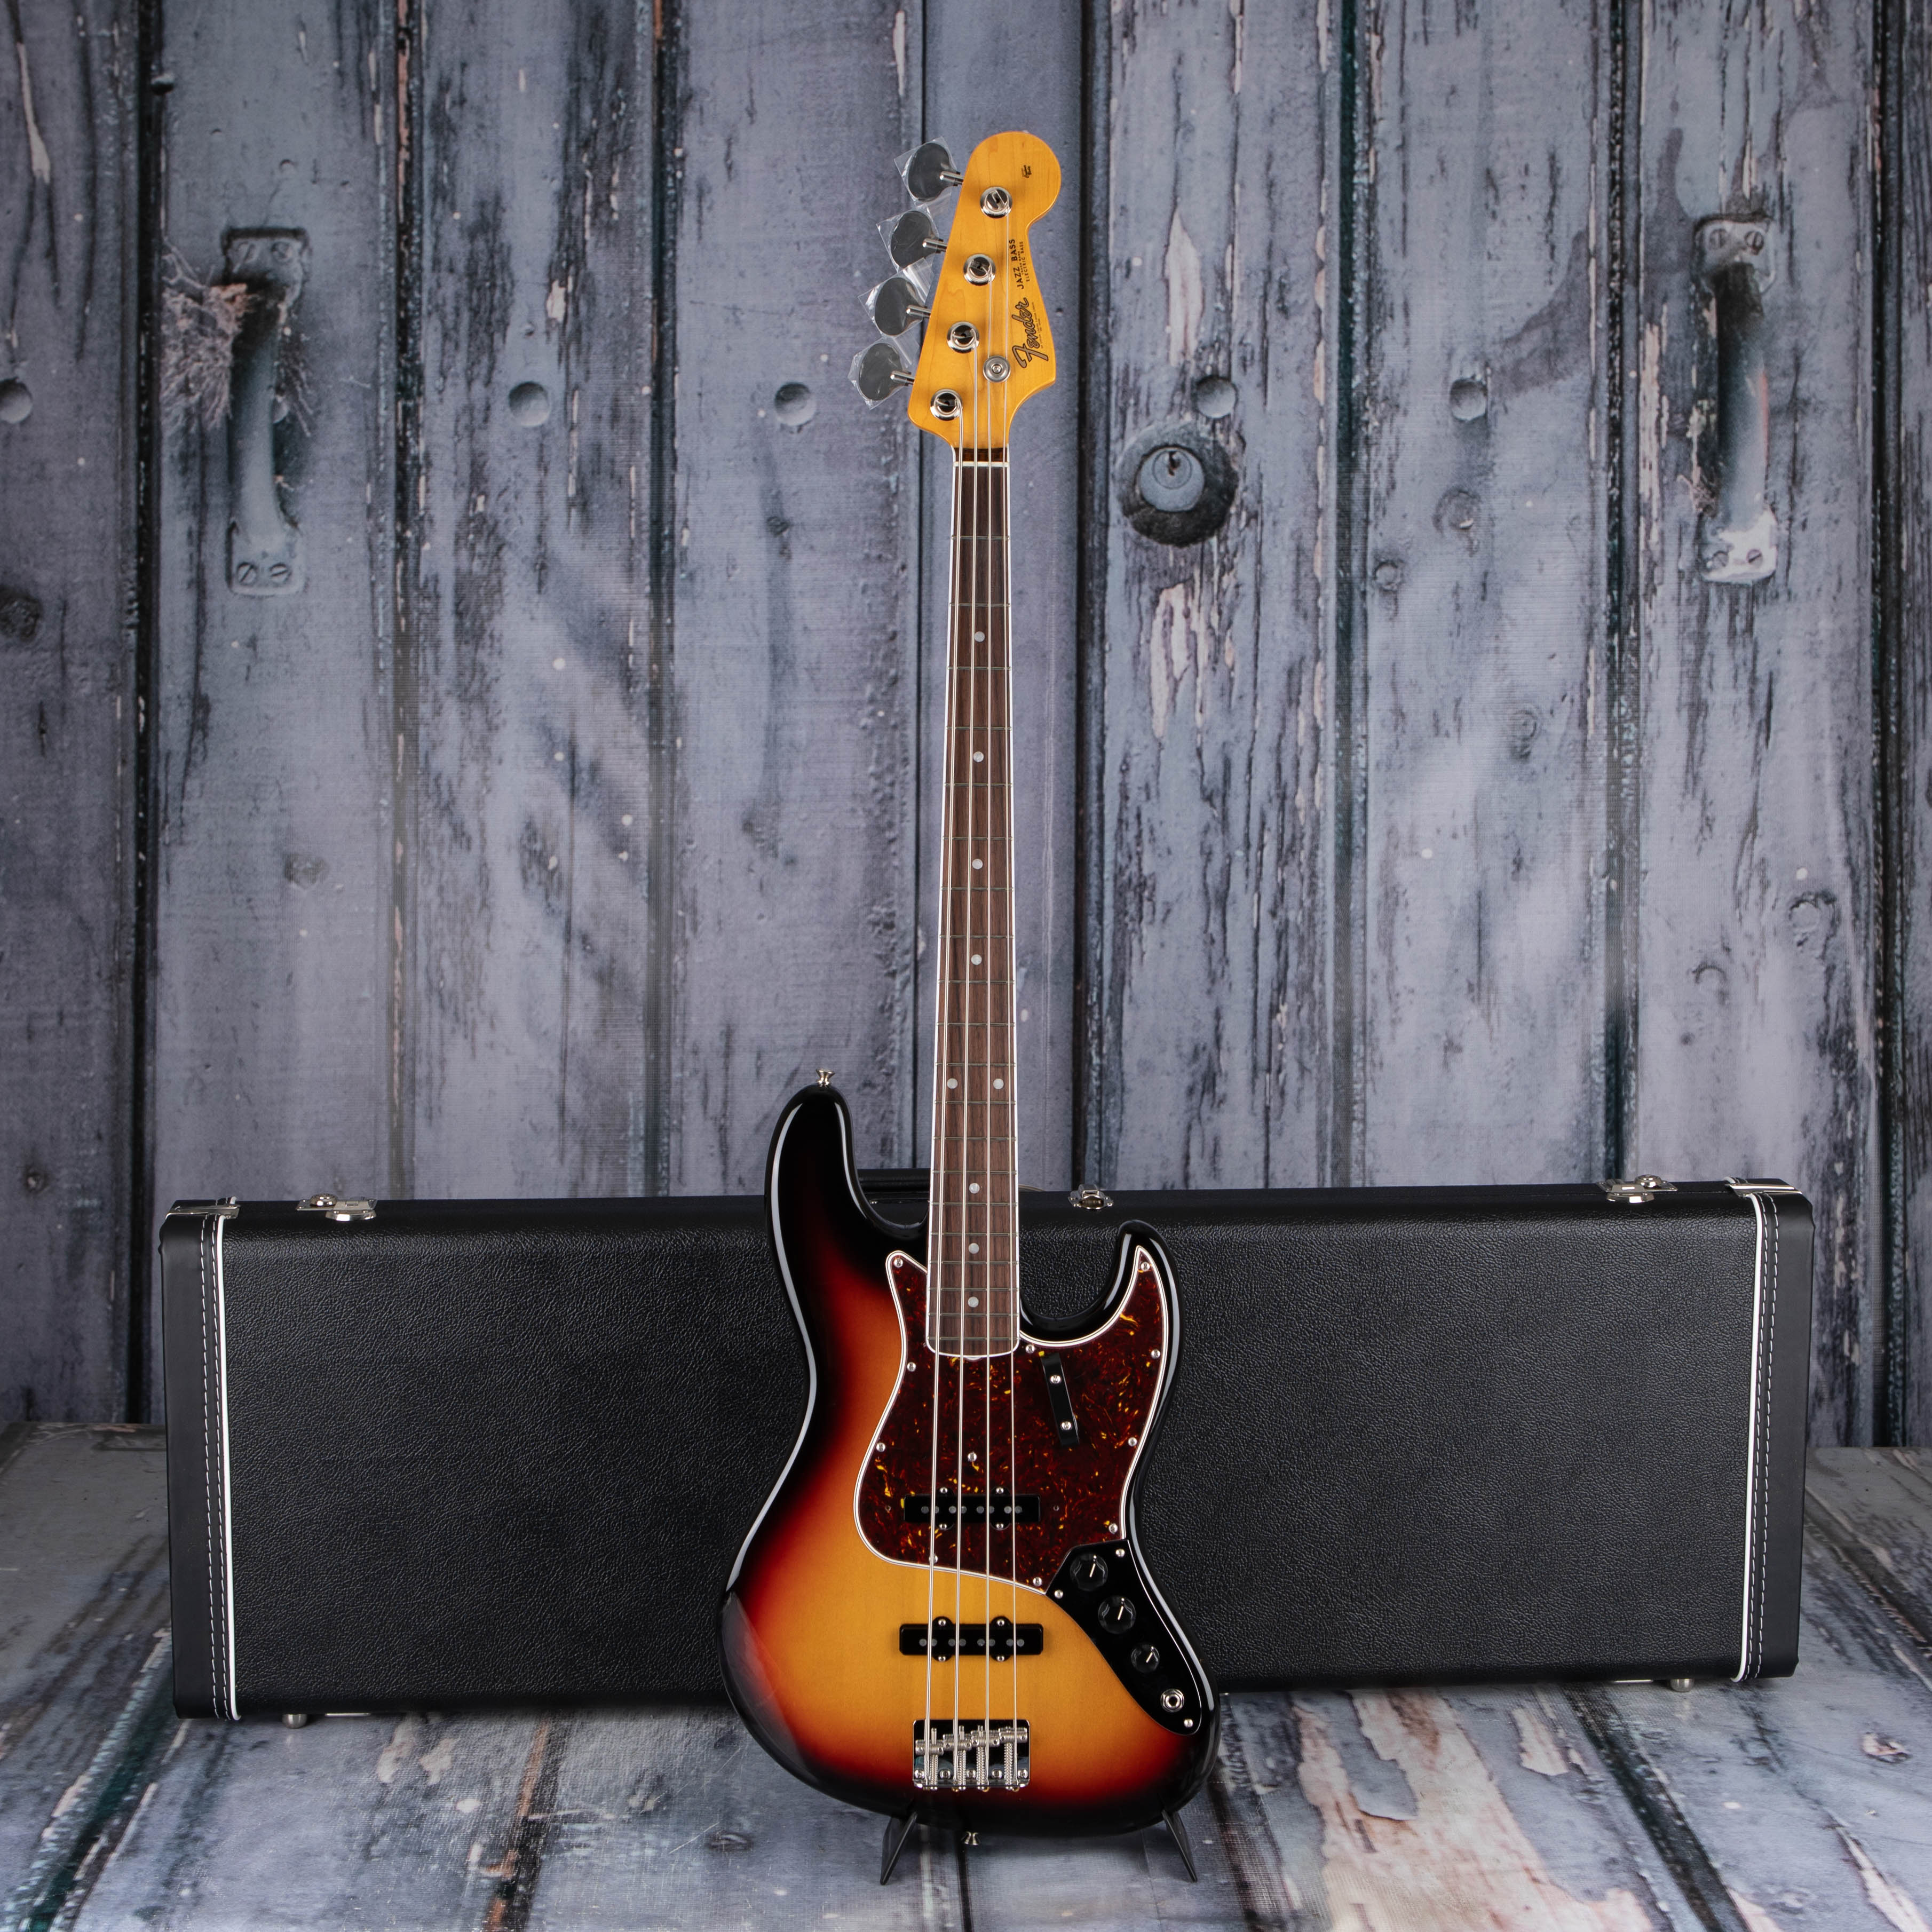 Fender American Vintage II 1966 Jazz Bass Guitar, 3-Color Sunburst, case